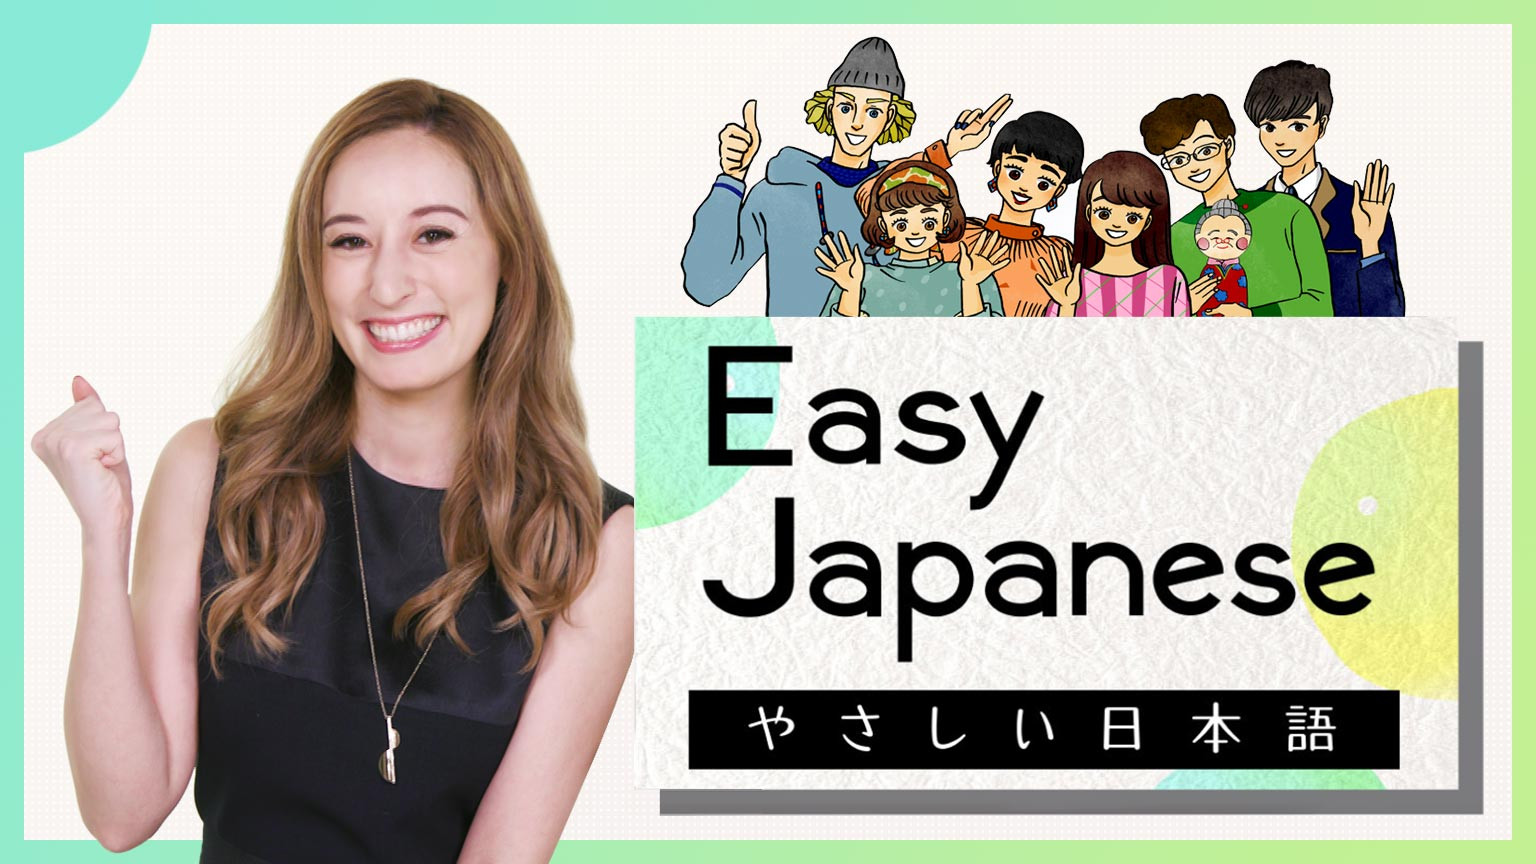 简明日语
Easy Japanese